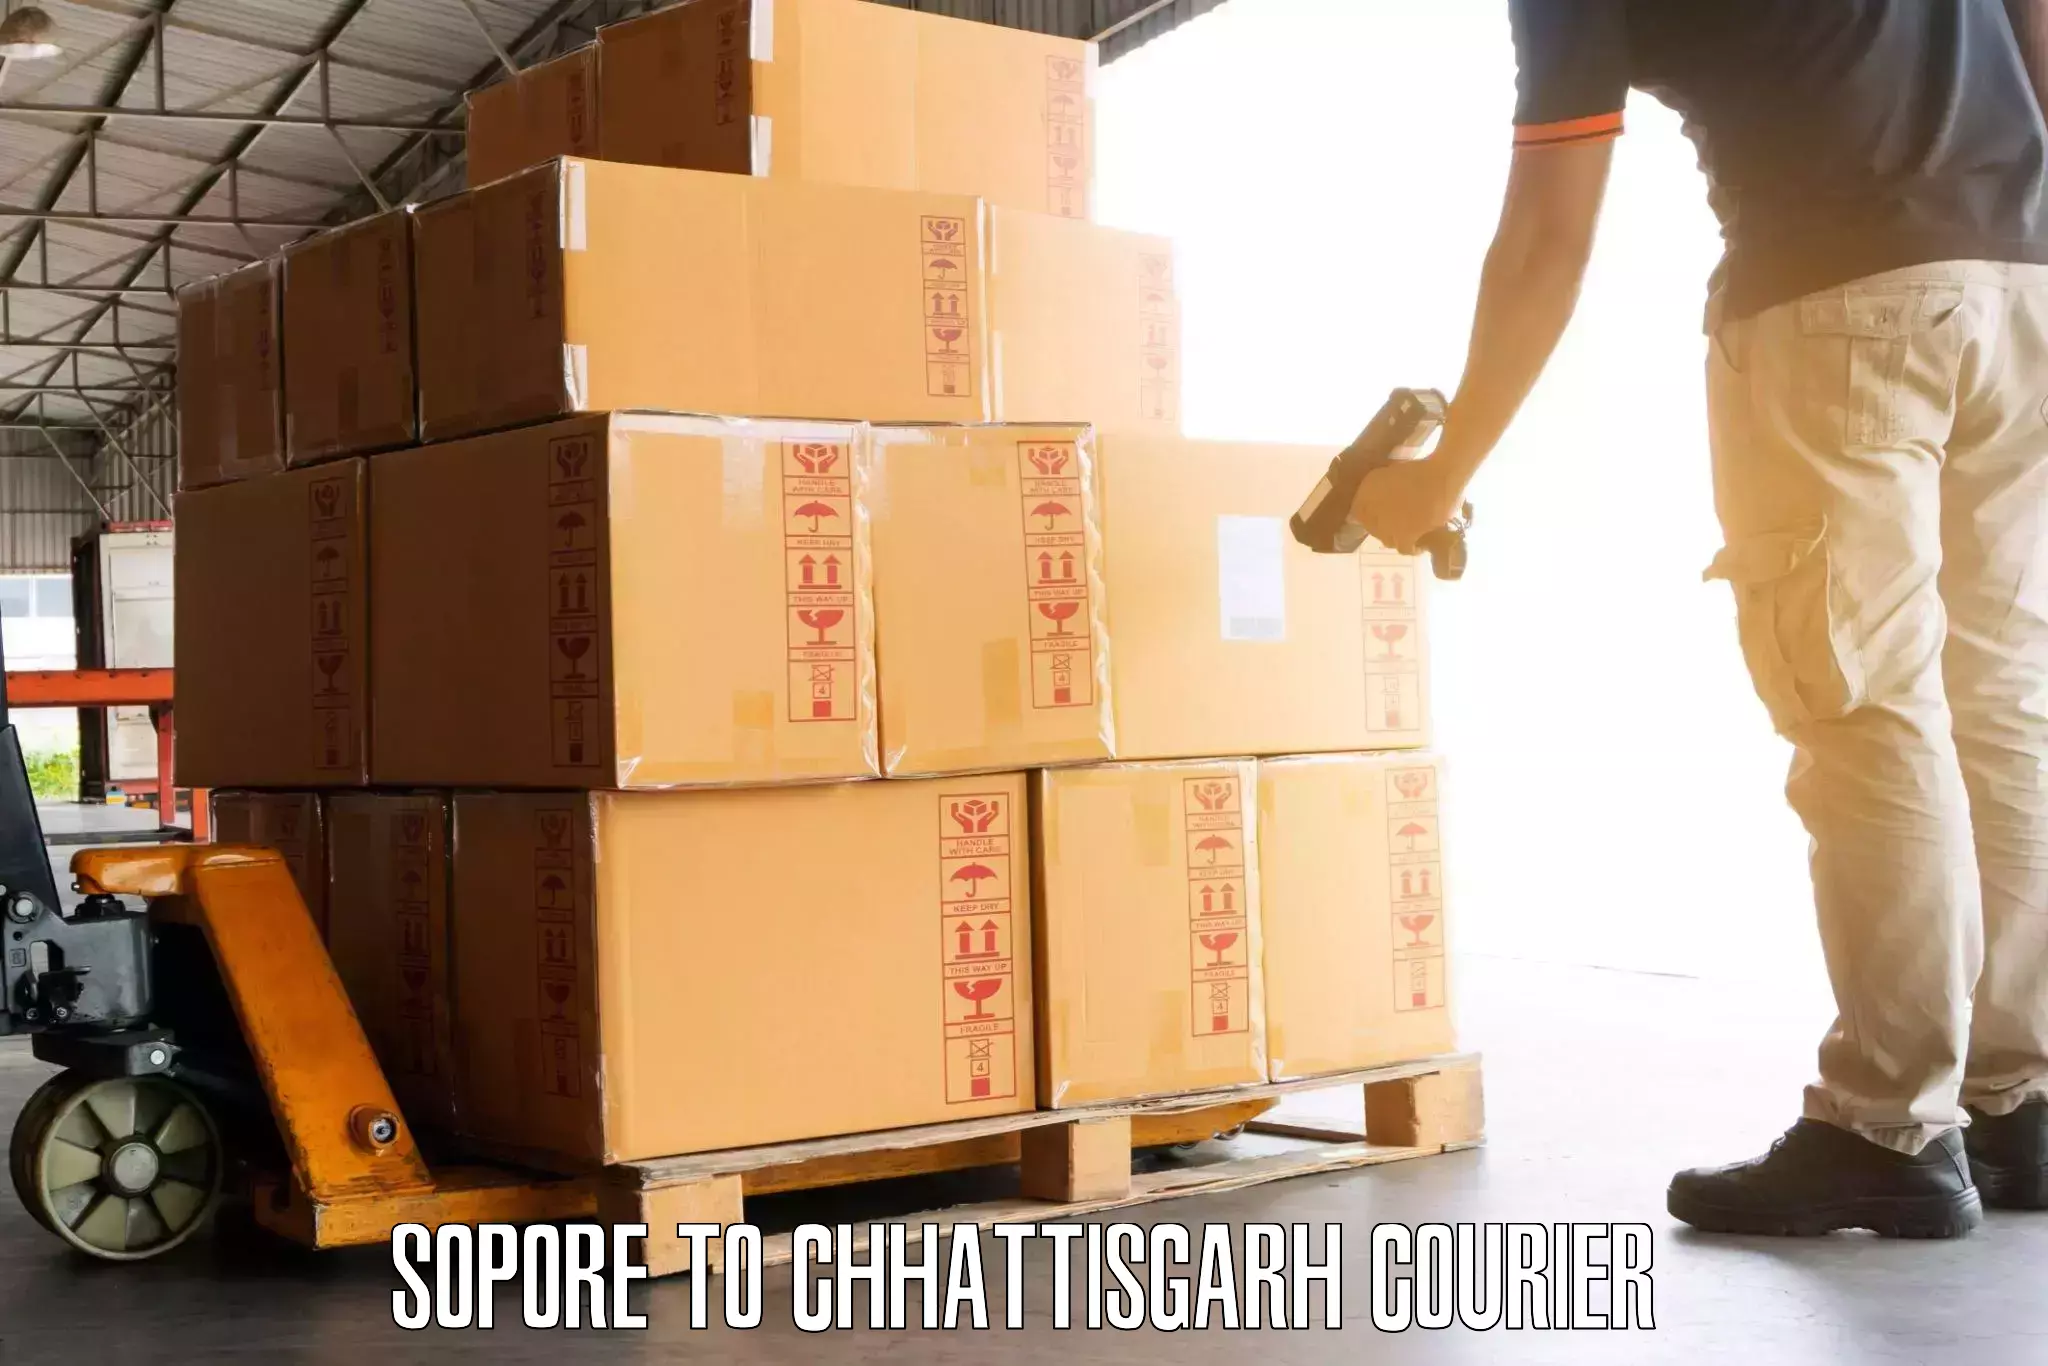 Luggage transport service Sopore to Raigarh Chhattisgarh